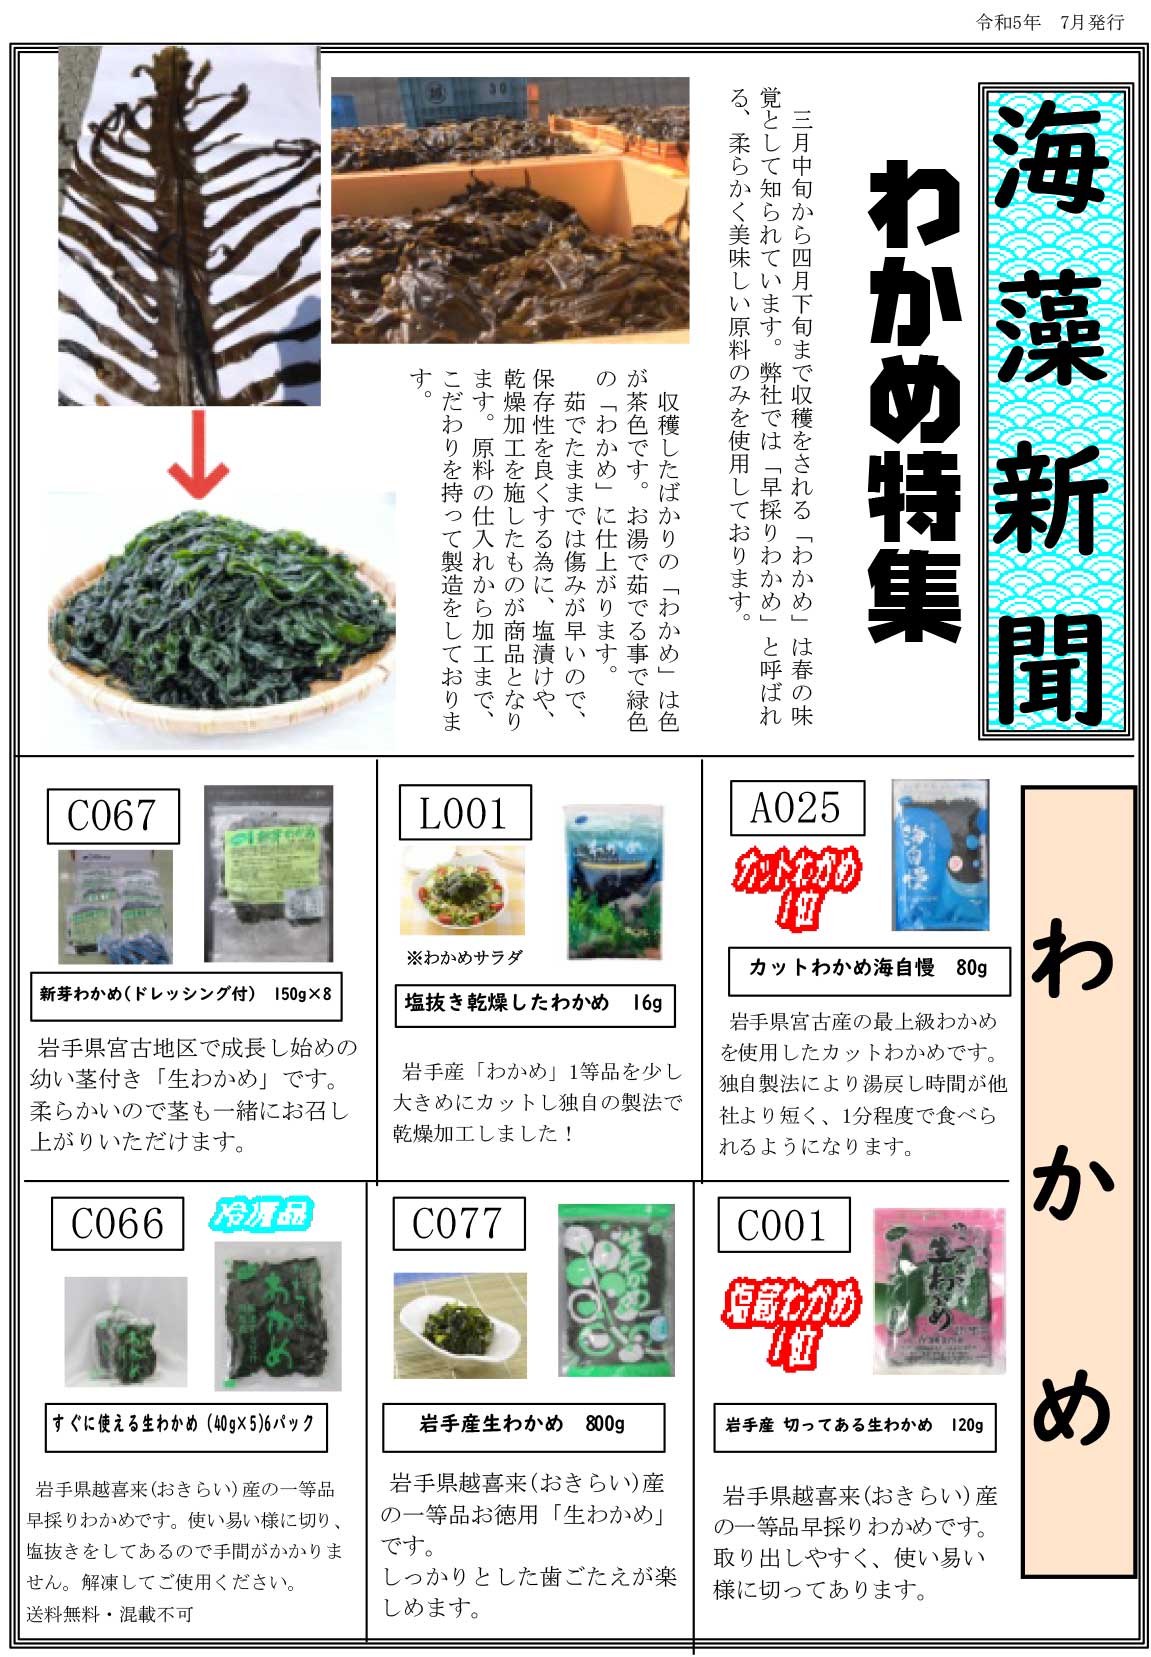 海藻新聞